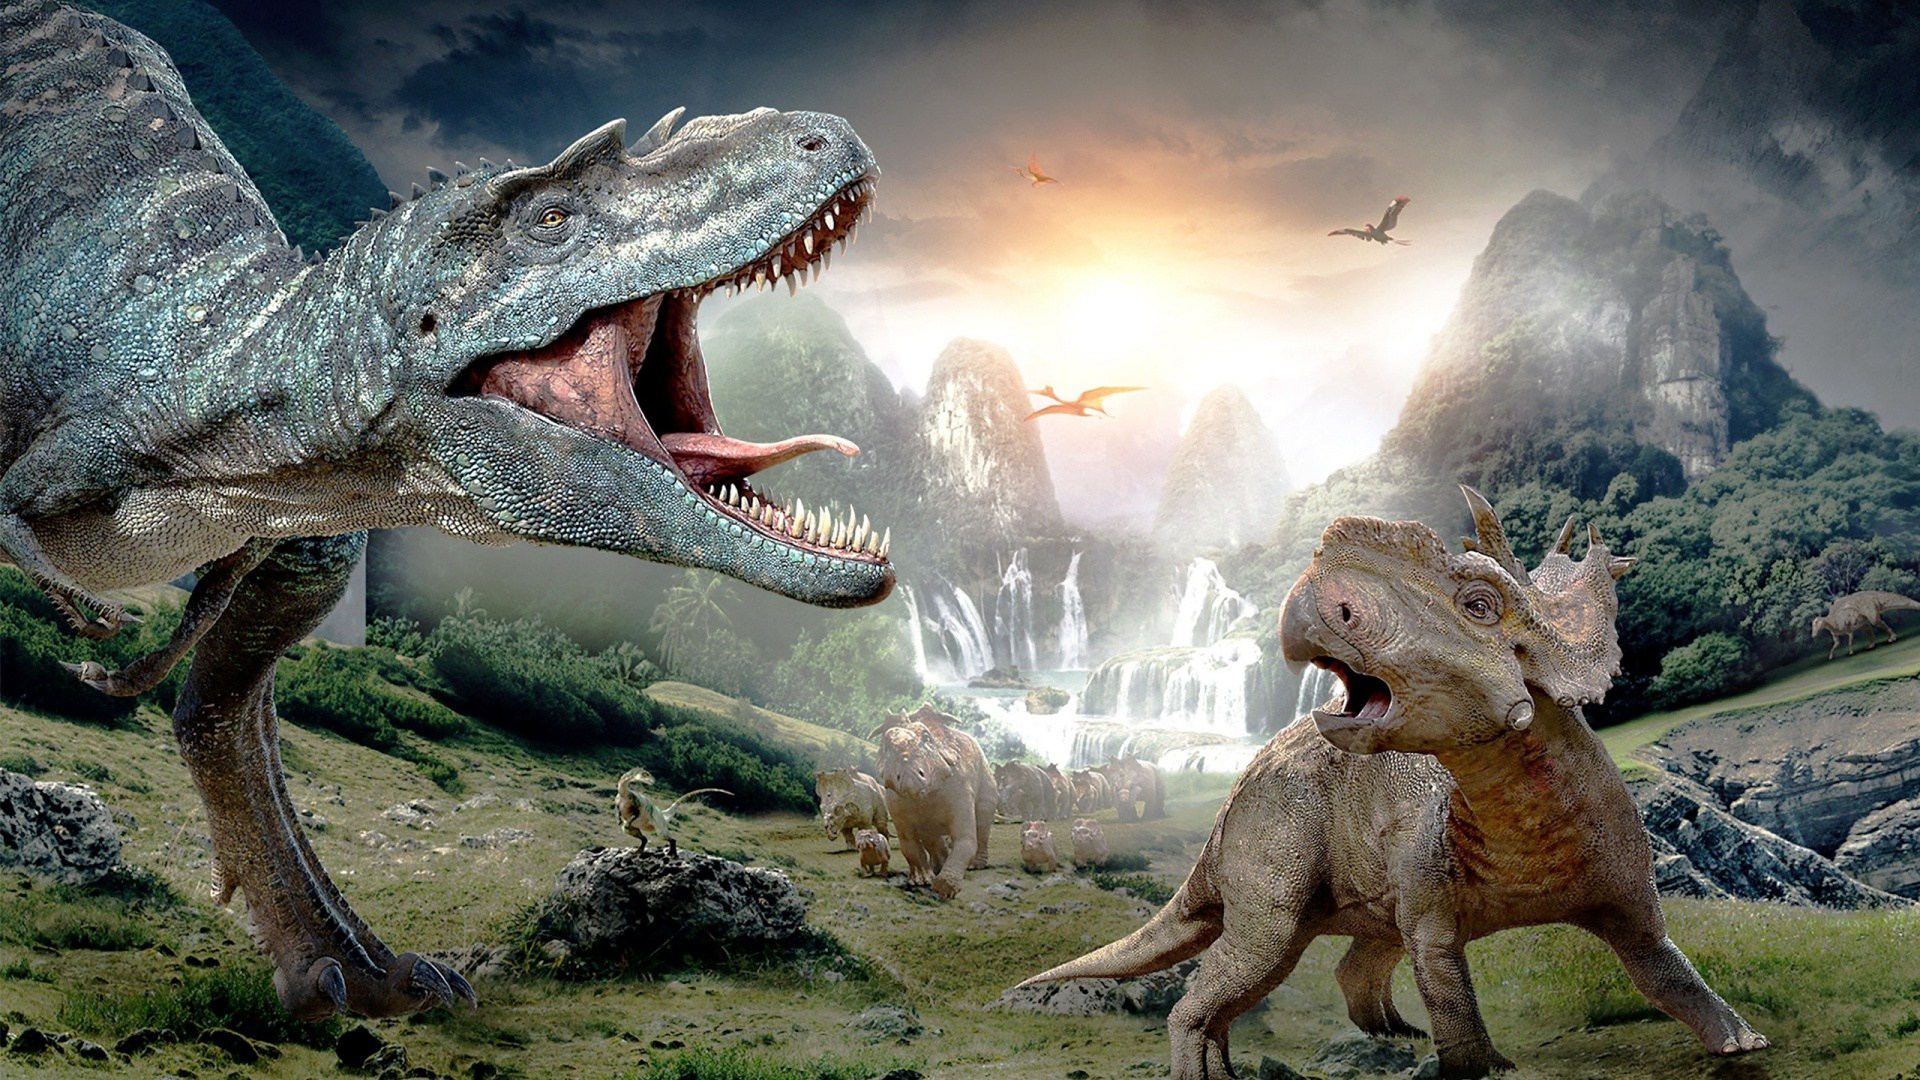 1920x1080 Wallpaper : nature, animals, dinosaurs, prehistoric, Tyrannosaurus rex, birds, digital art, landscape, Sun, mountains, rock, waterfall, roar ztc7888 1154296 HD Wallpapers